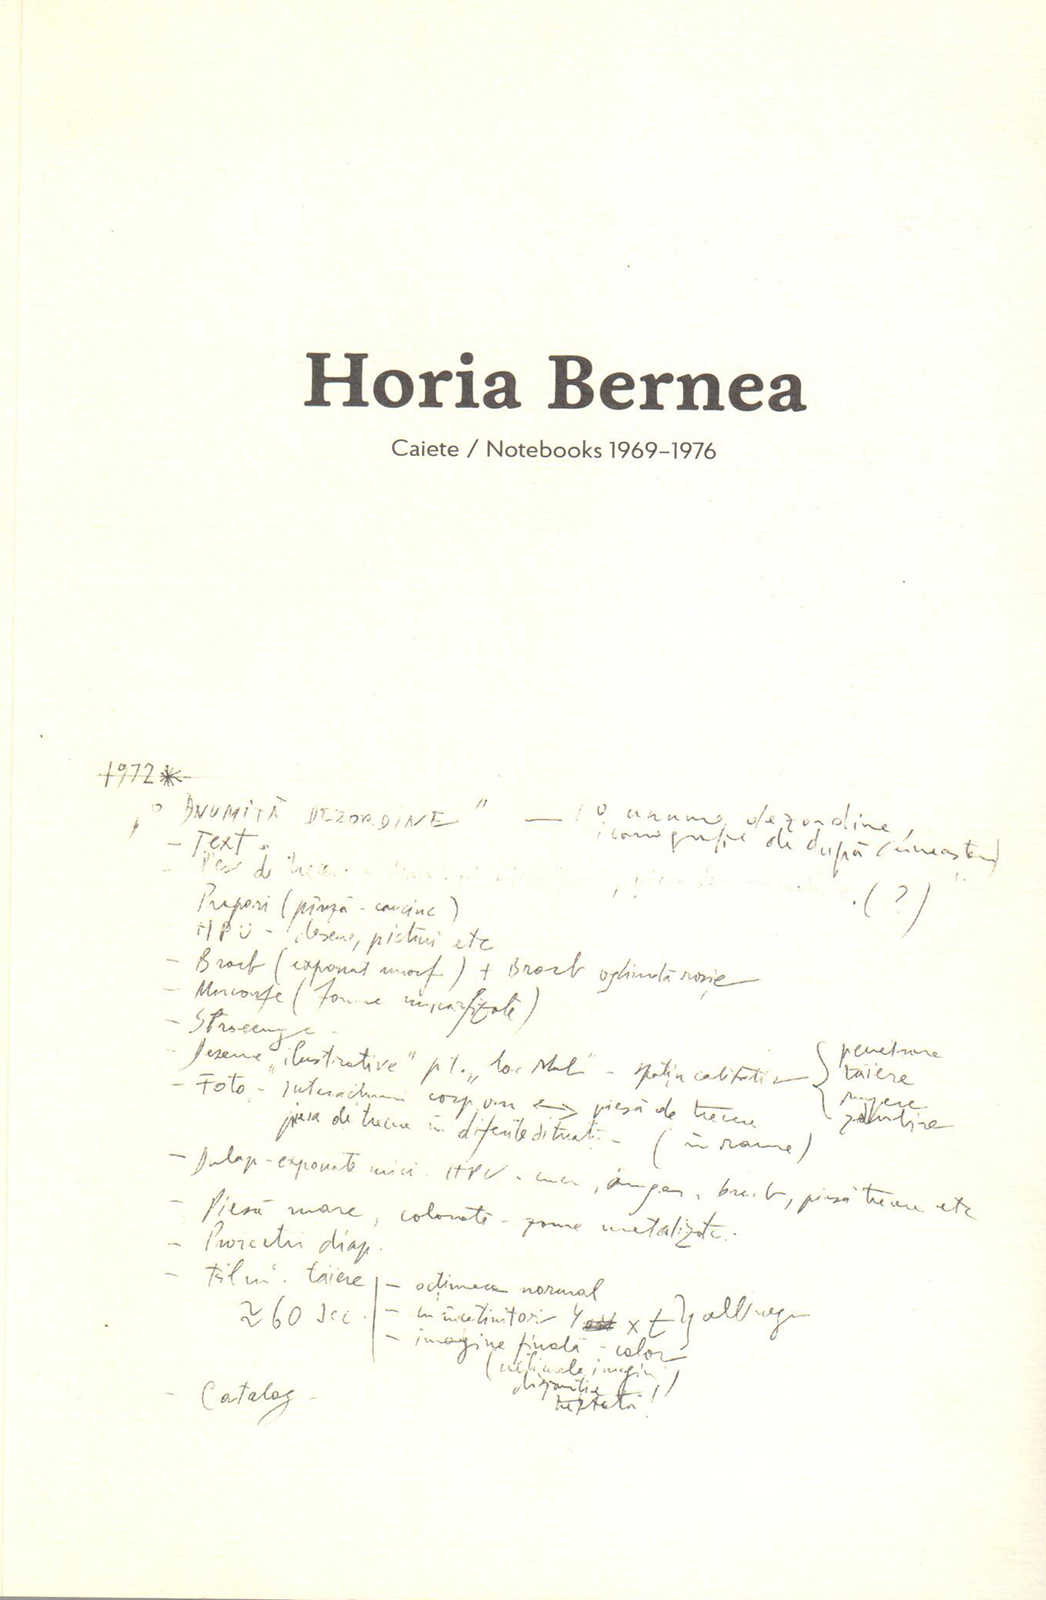 Caiete - Notebooks 1976 - 1976 | Horia Bernea